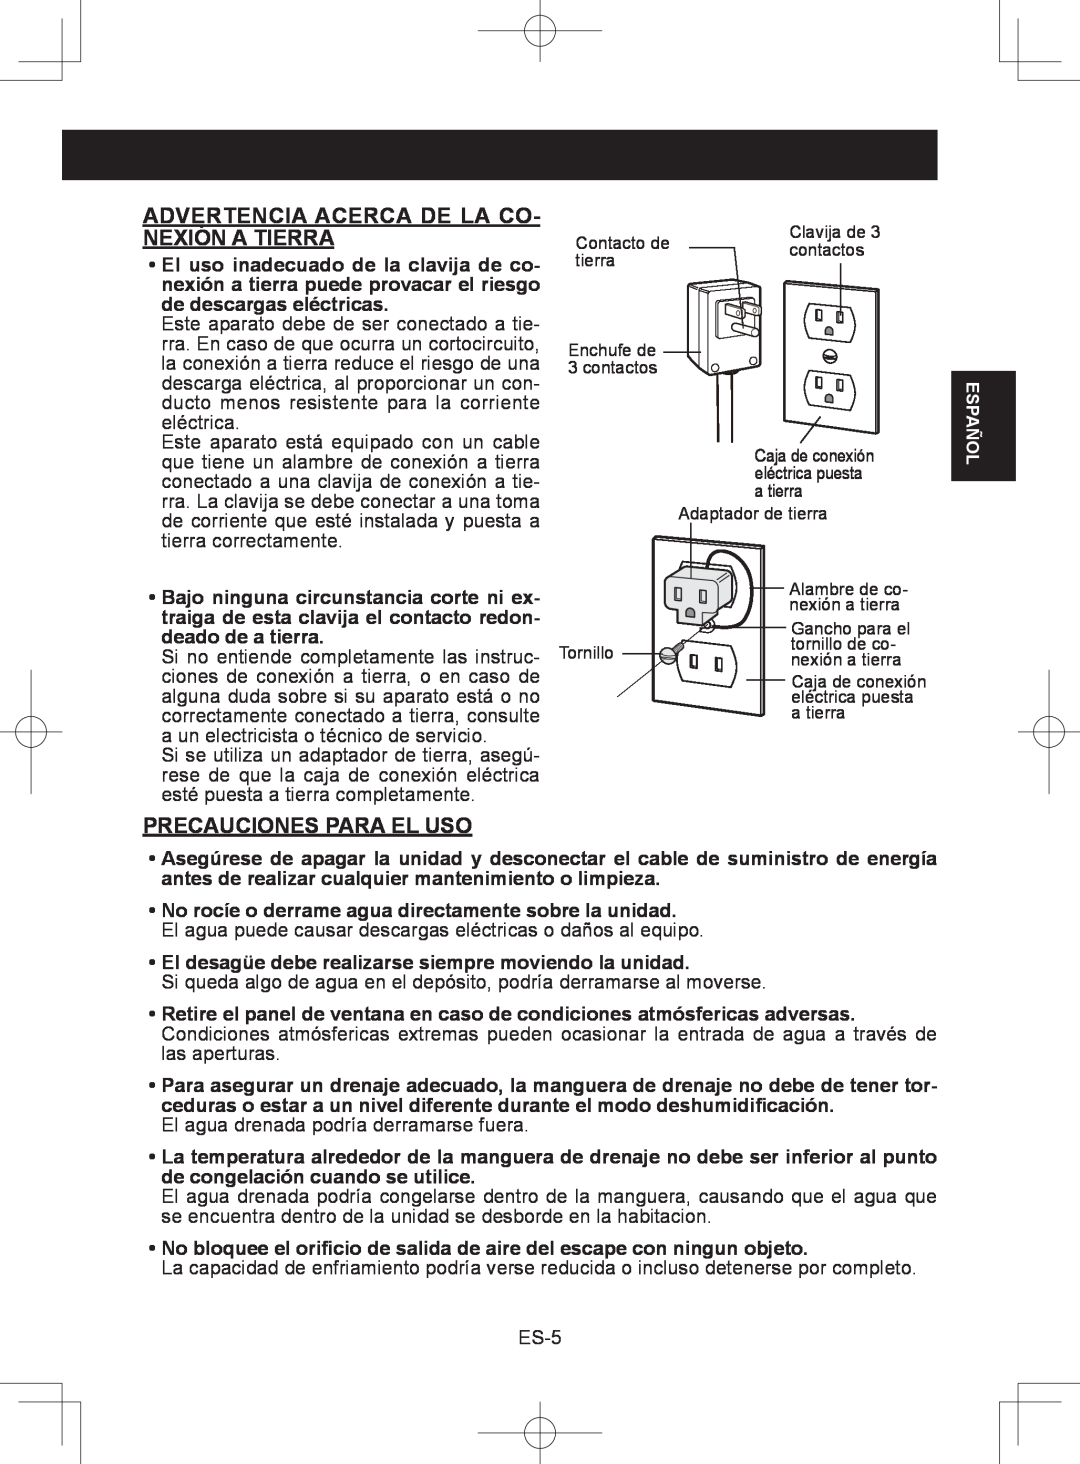 Sharp CV-2P10SC operation manual Advertencia Acerca De La Co- Nexión A Tierra, Precauciones Para El Uso 